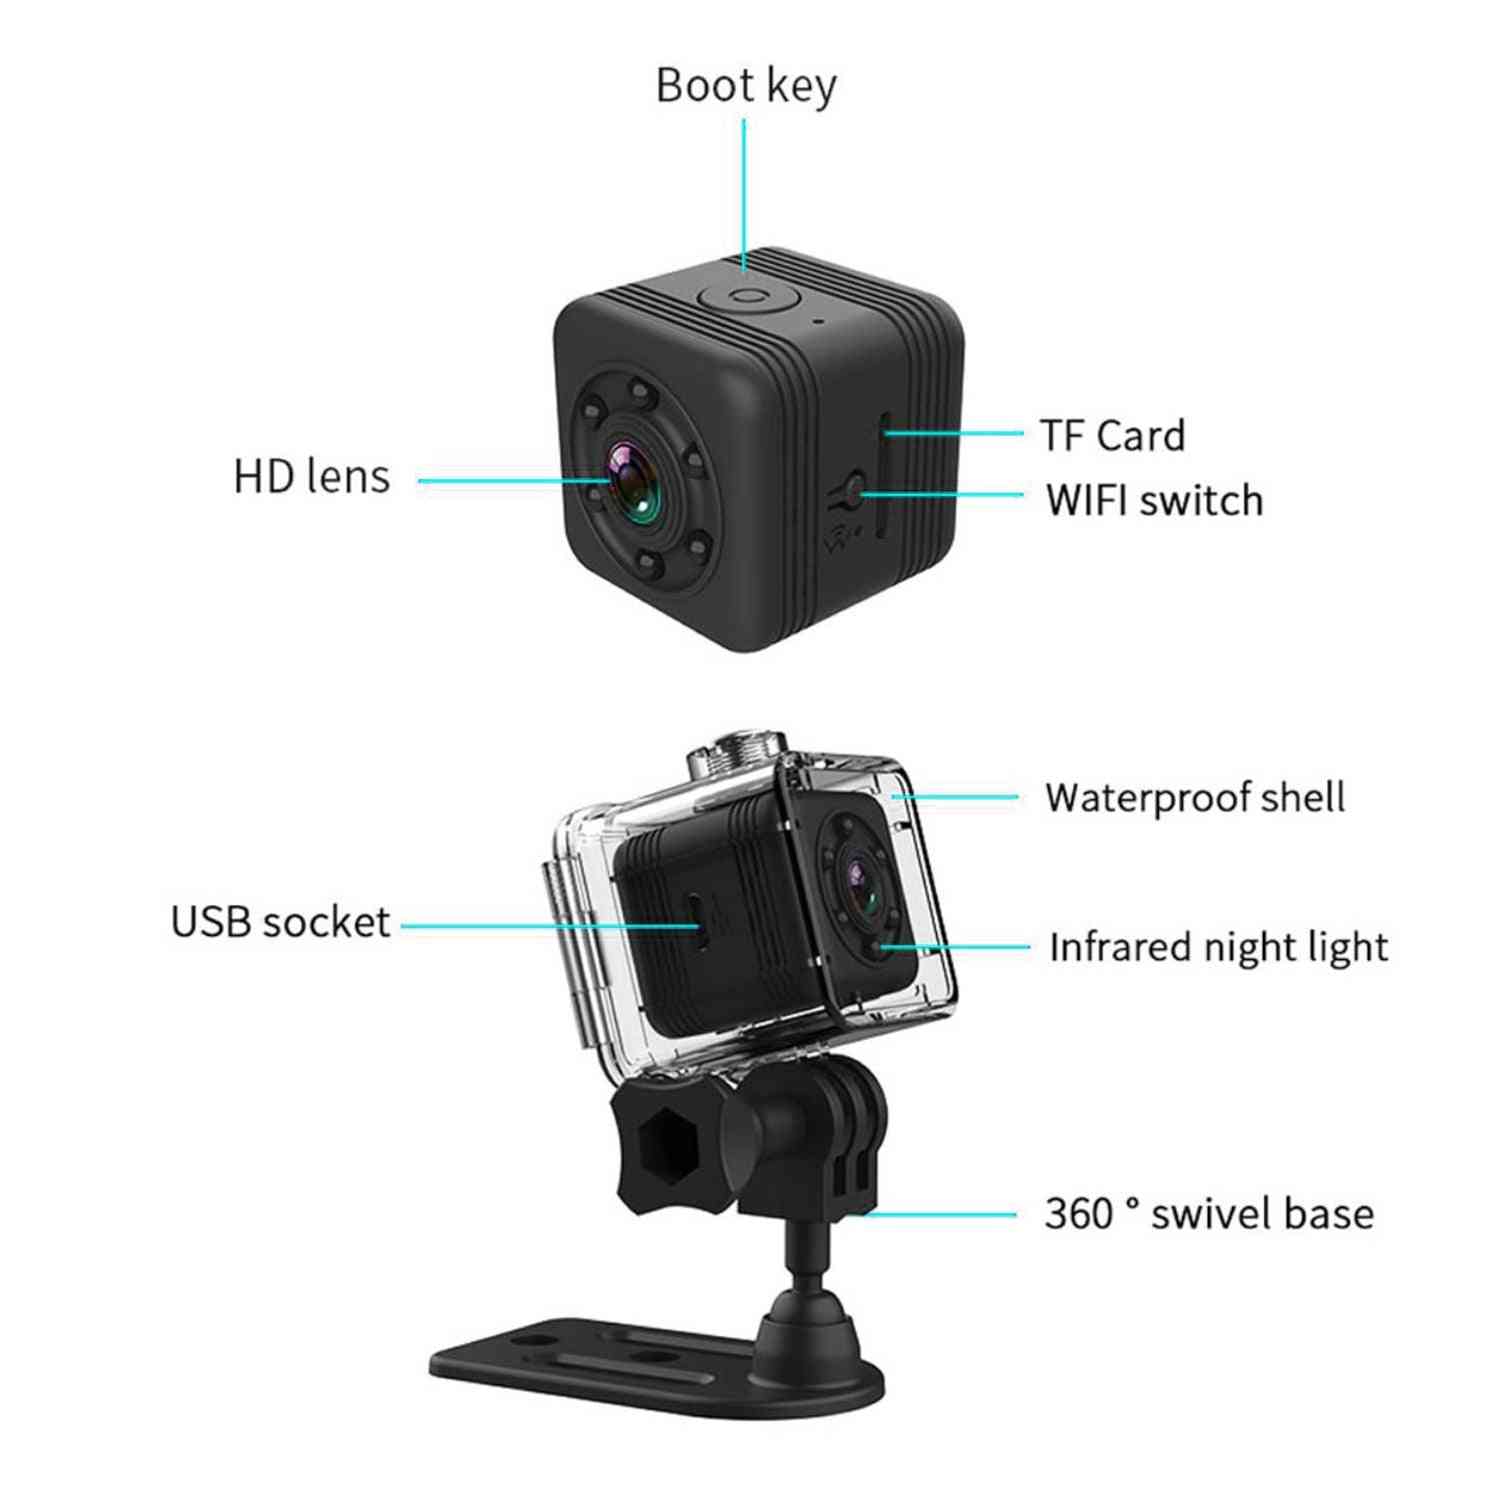 Sports sq29 mini cámara ip para visión nocturna, videocámara de movimiento a prueba de agua, micro cámara dvr sport - sq11 negro